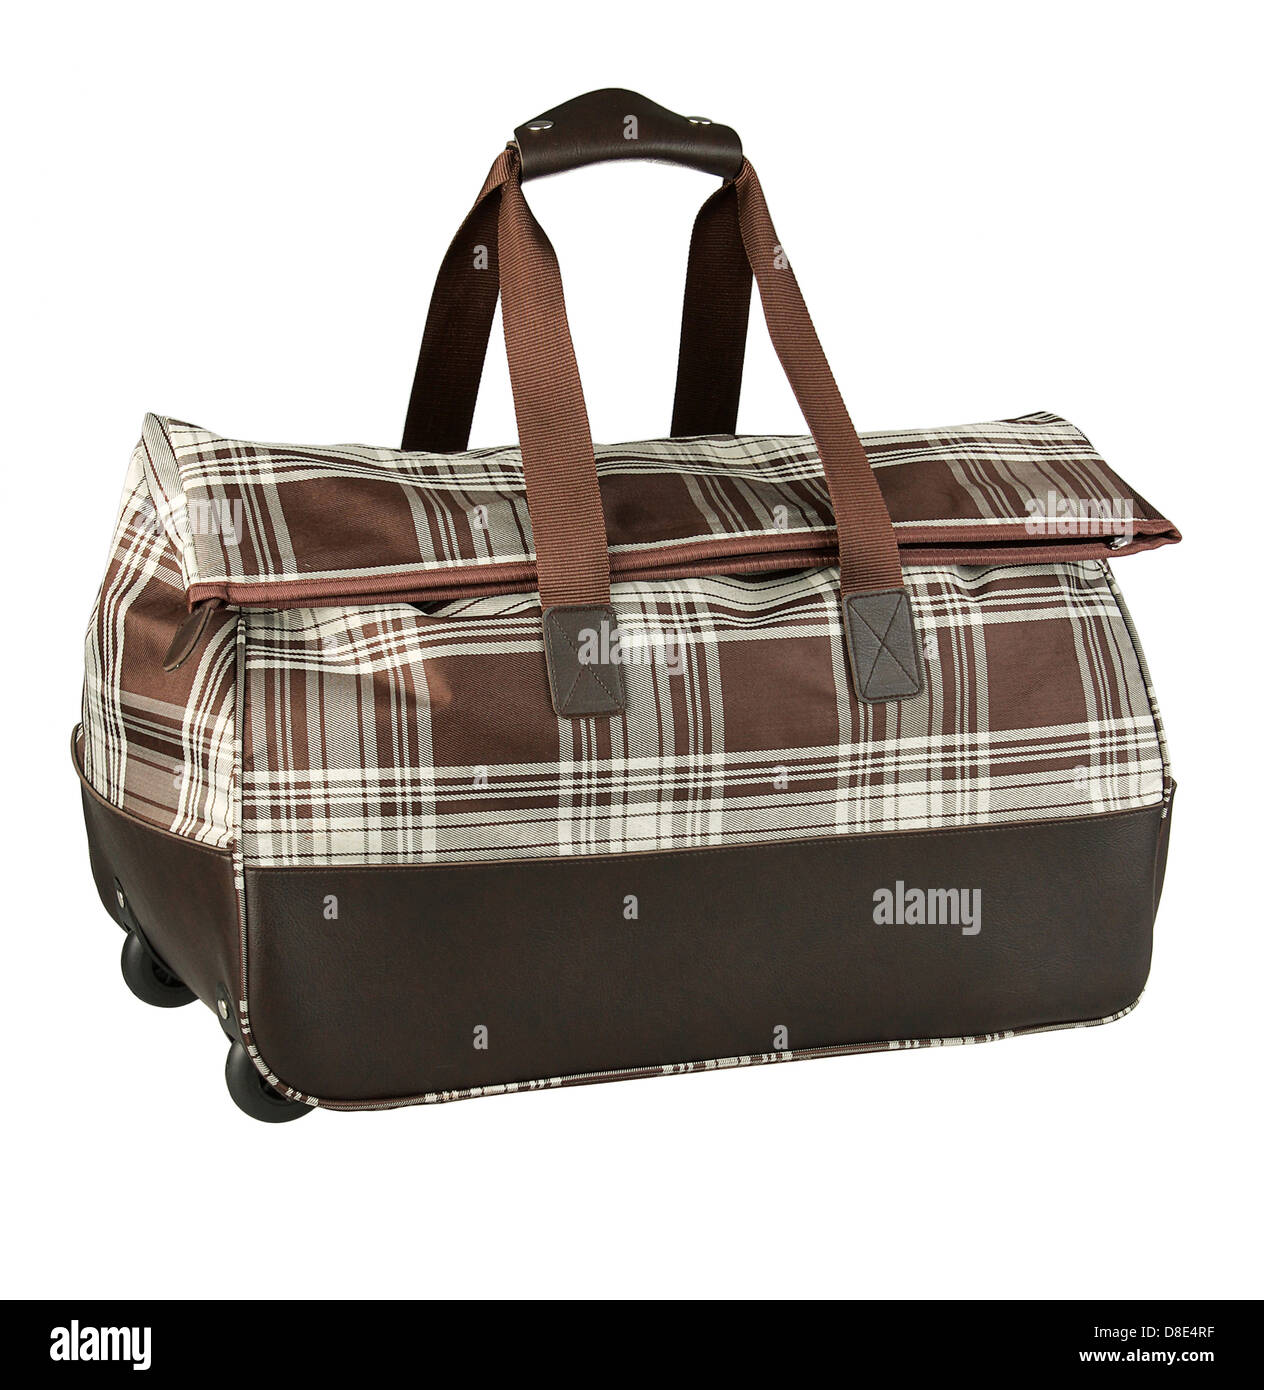 Schöne kompakte Gepäck müssen Sie, wenn Sie reisen müssen Stockfoto